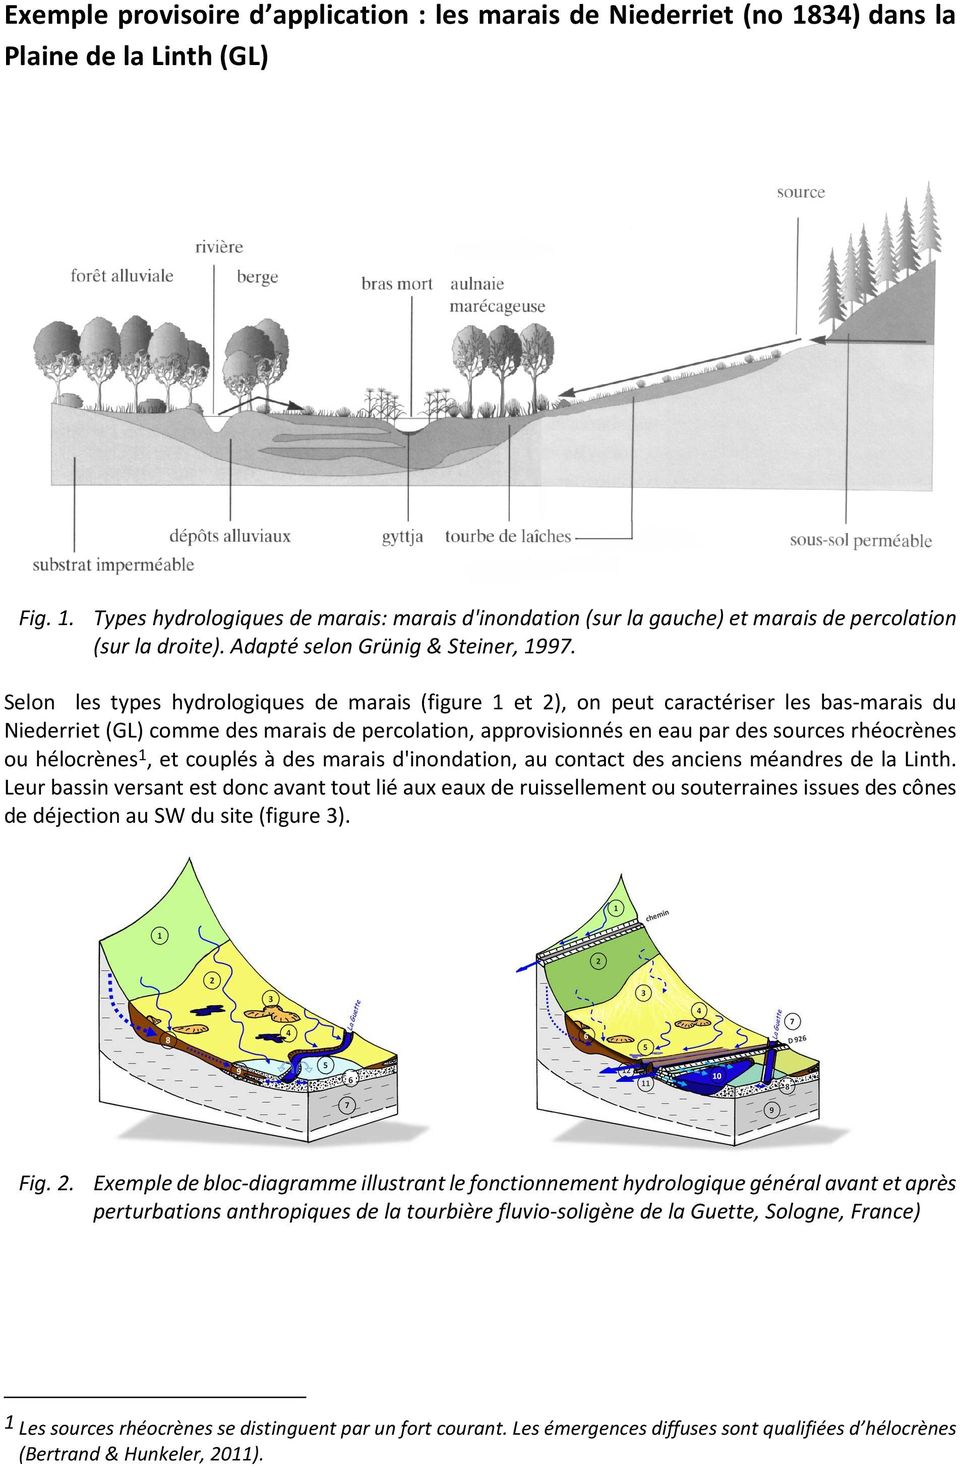 Selon les types hydrologiques de marais (figure 1 et 2), on peut caractériser les bas-marais du Niederriet (GL) comme des marais de percolation, approvisionnés en eau par des sources rhéocrènes ou